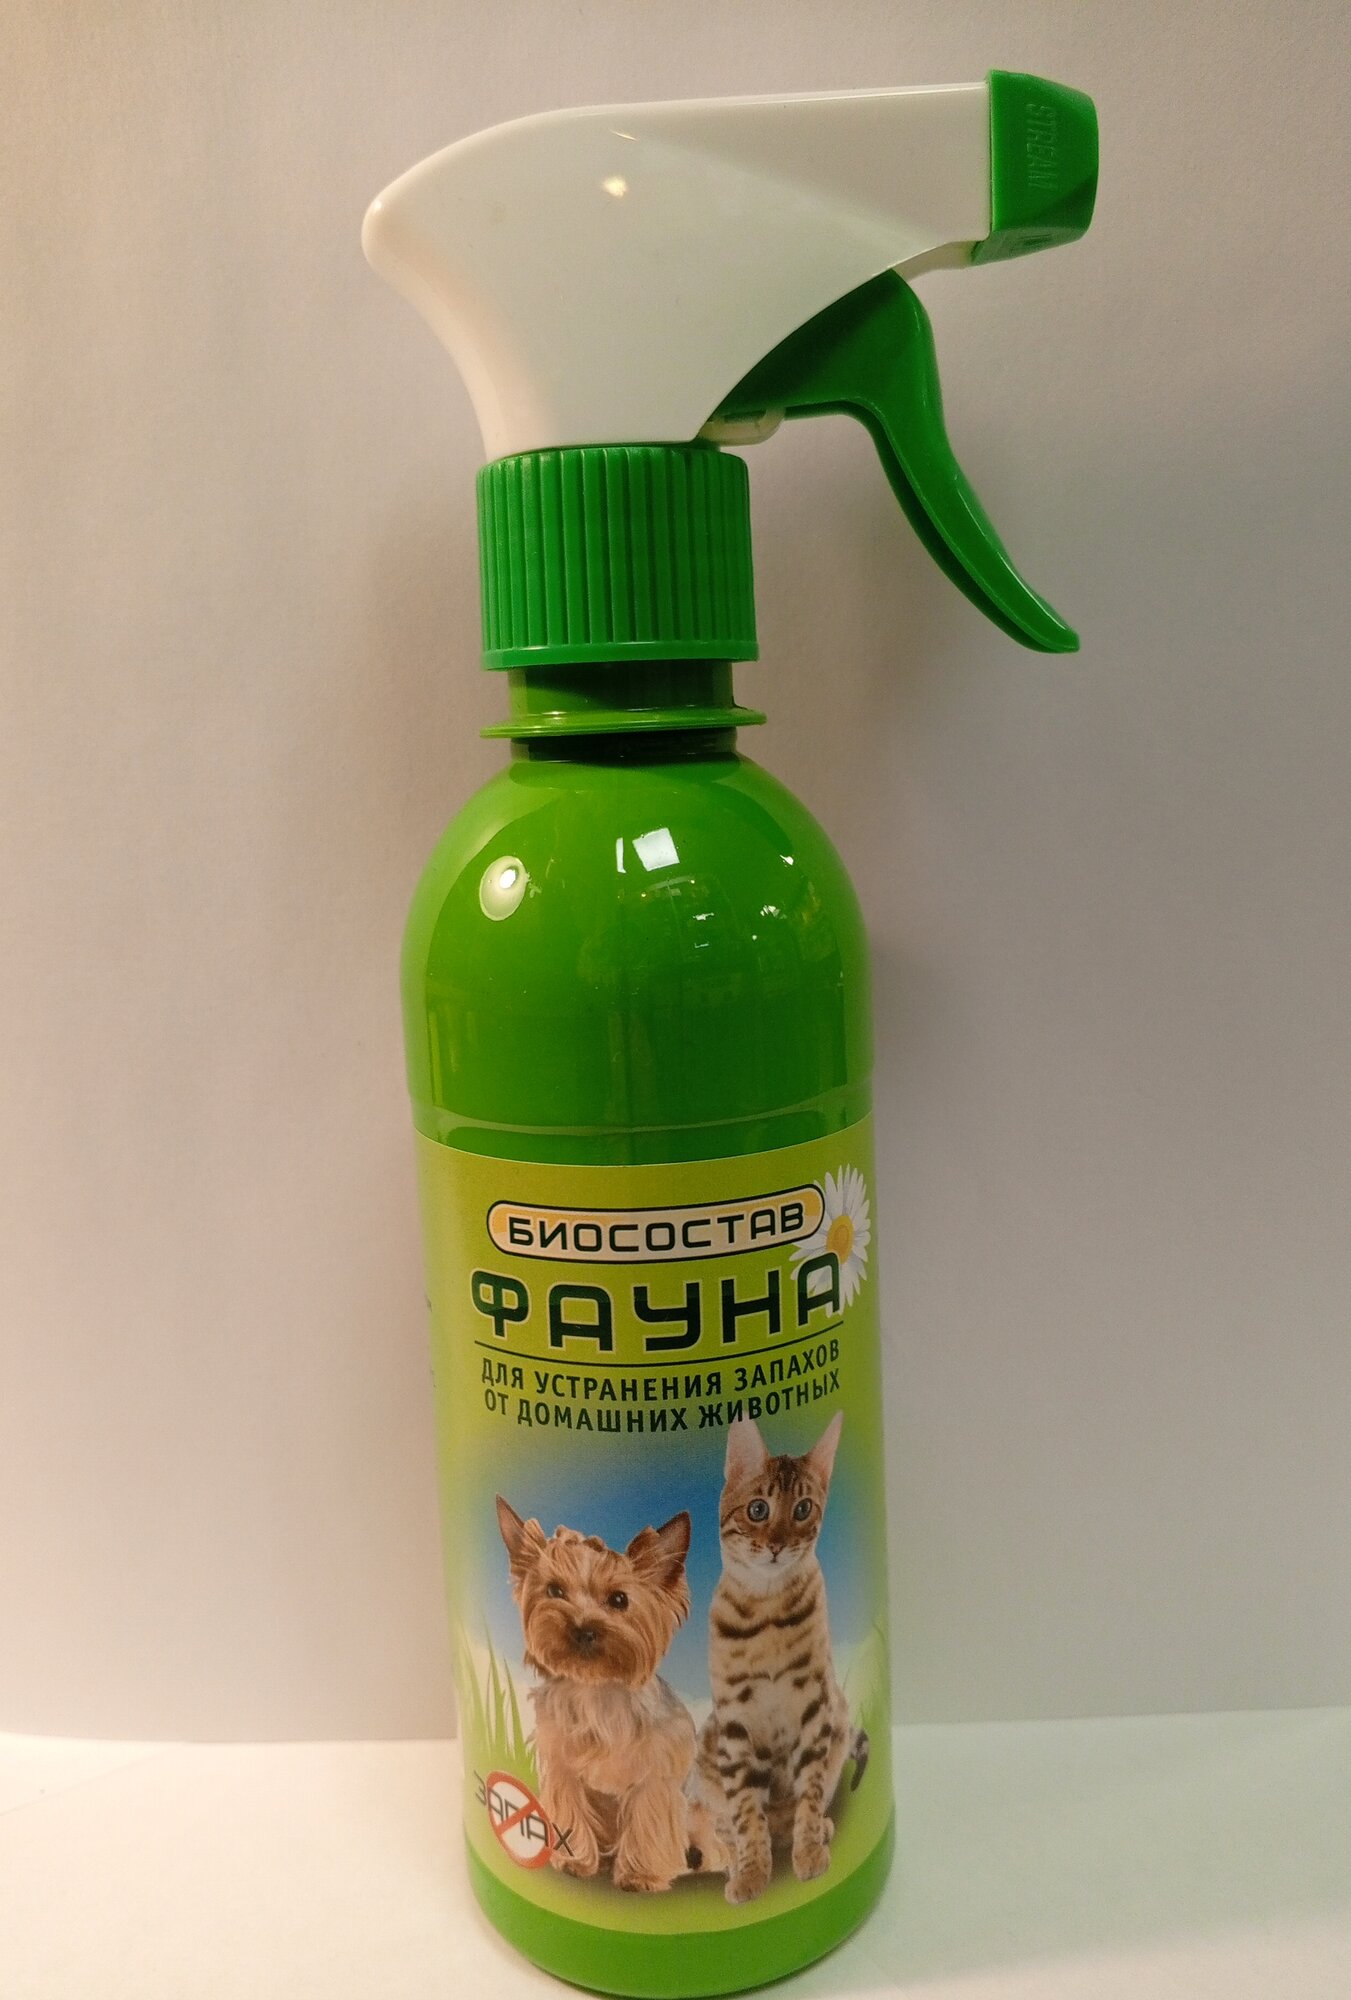 Биосостав фауна для устранения запахов от домашних животных 300мл